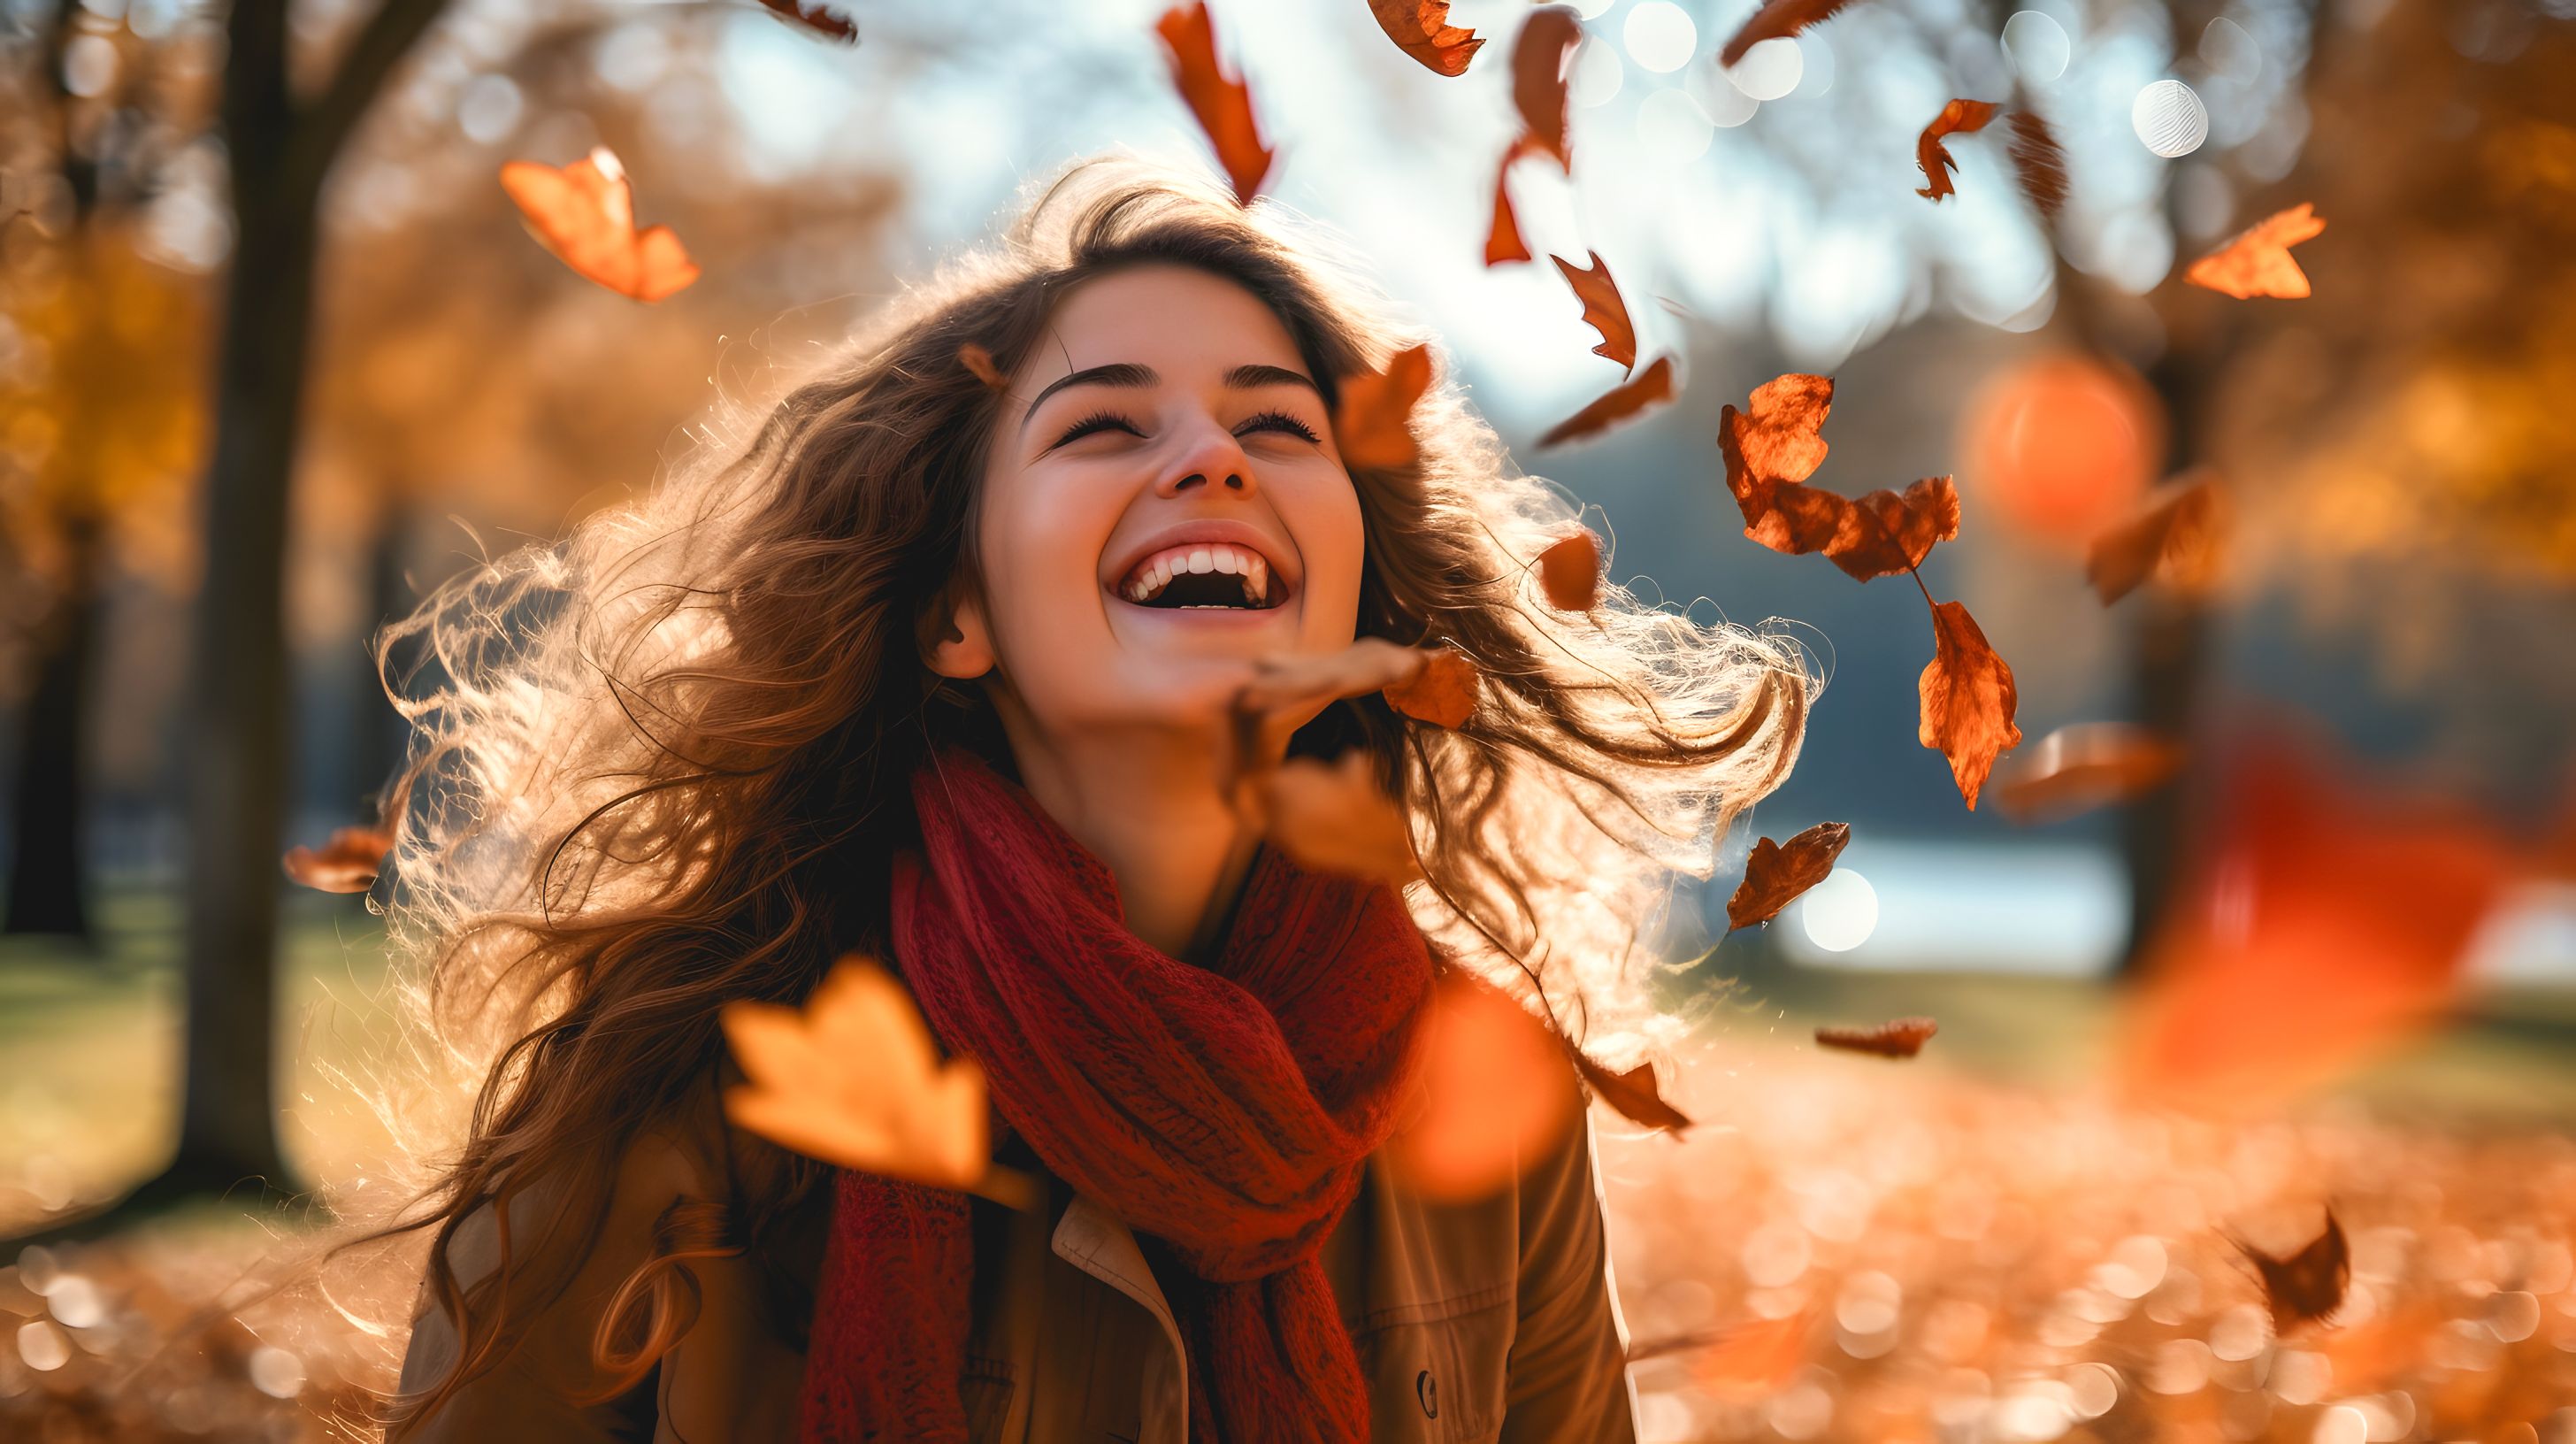 Frau lacht in Herbstsonne, Blätterregen, warme Farben